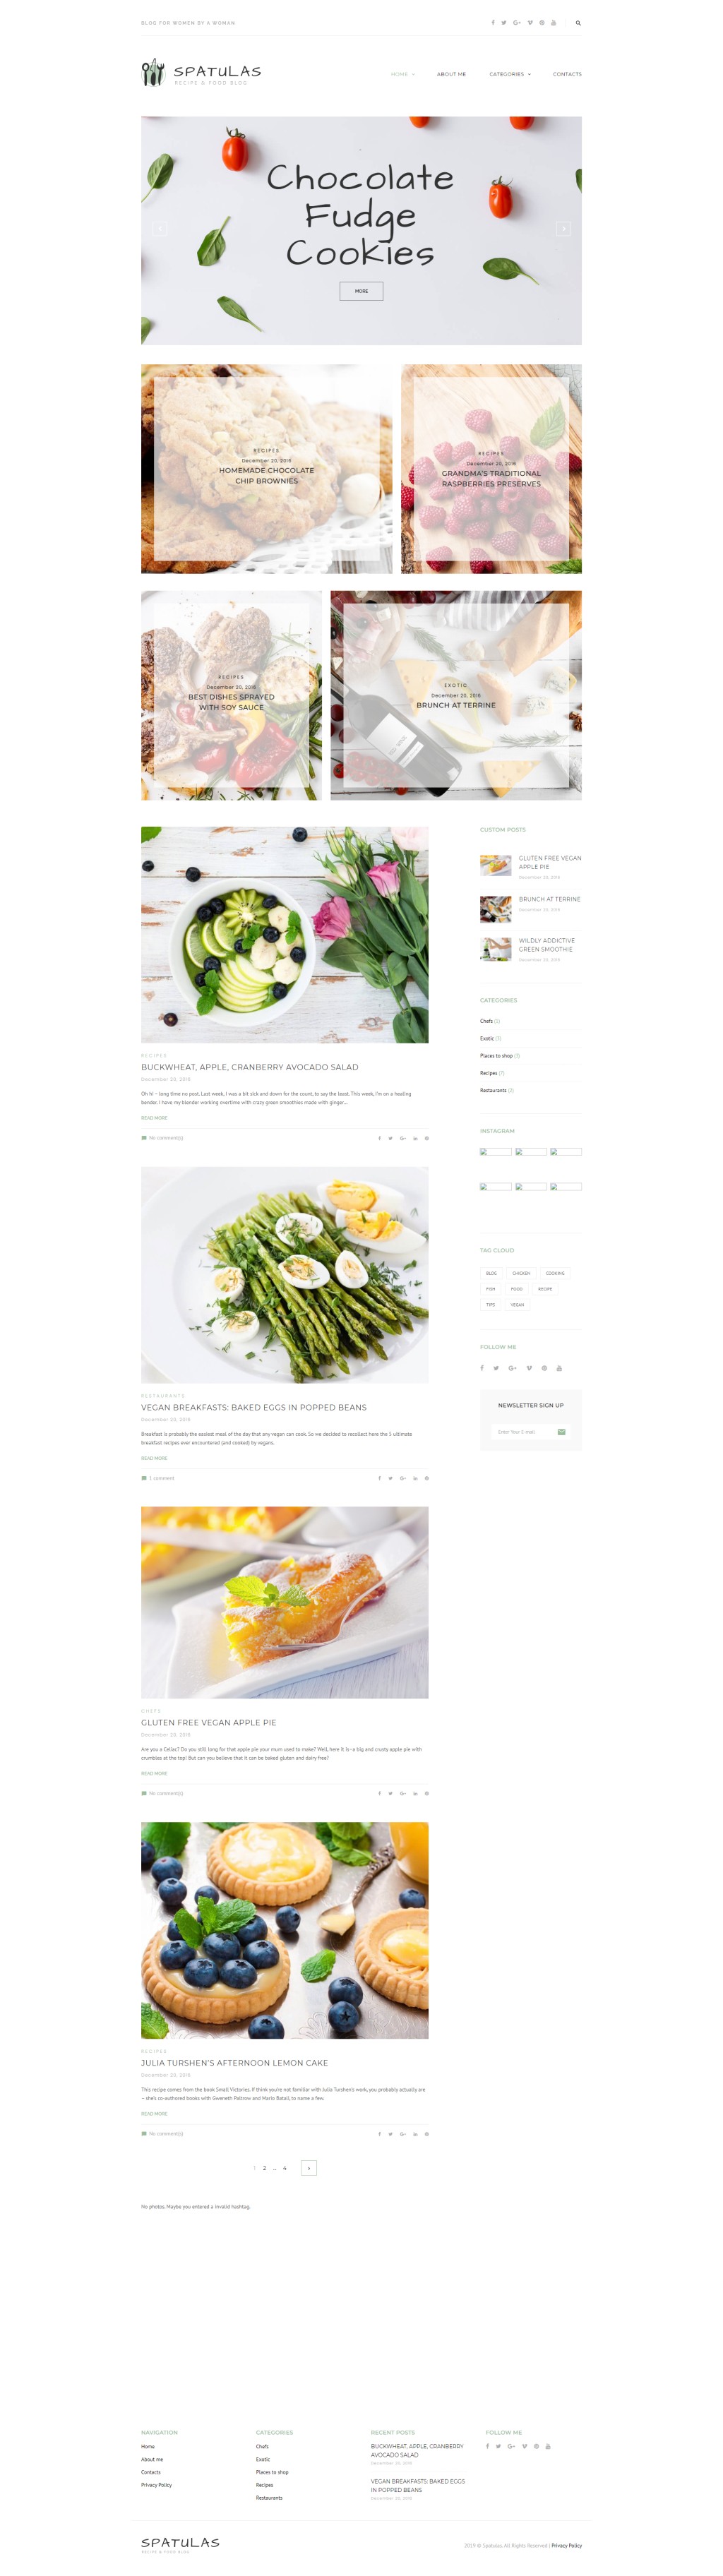 Шпатели - Блог о рецептах и продуктах питания. WordPress  шаблон. Артикул 63601